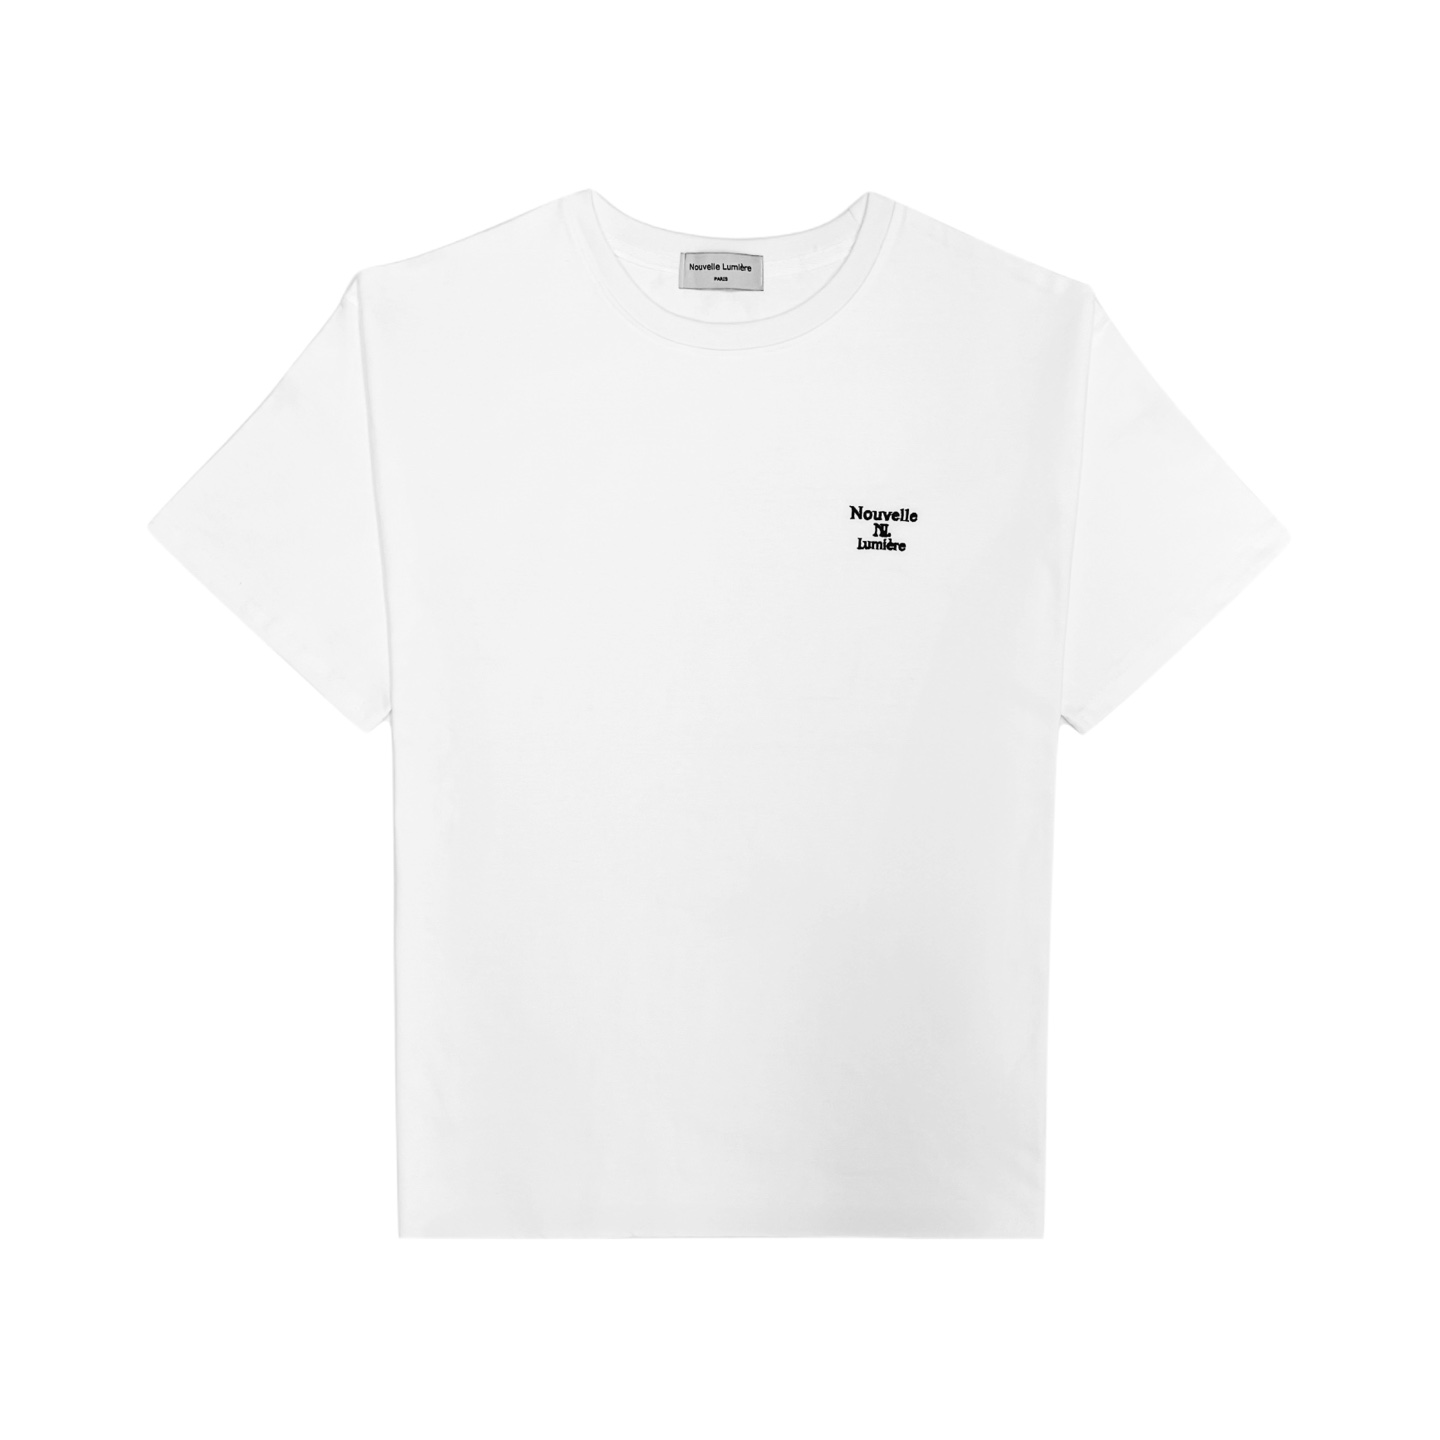 ヌーベルミエール クラシック 刺繍ロゴ ホワイト 半袖 Tシャツ